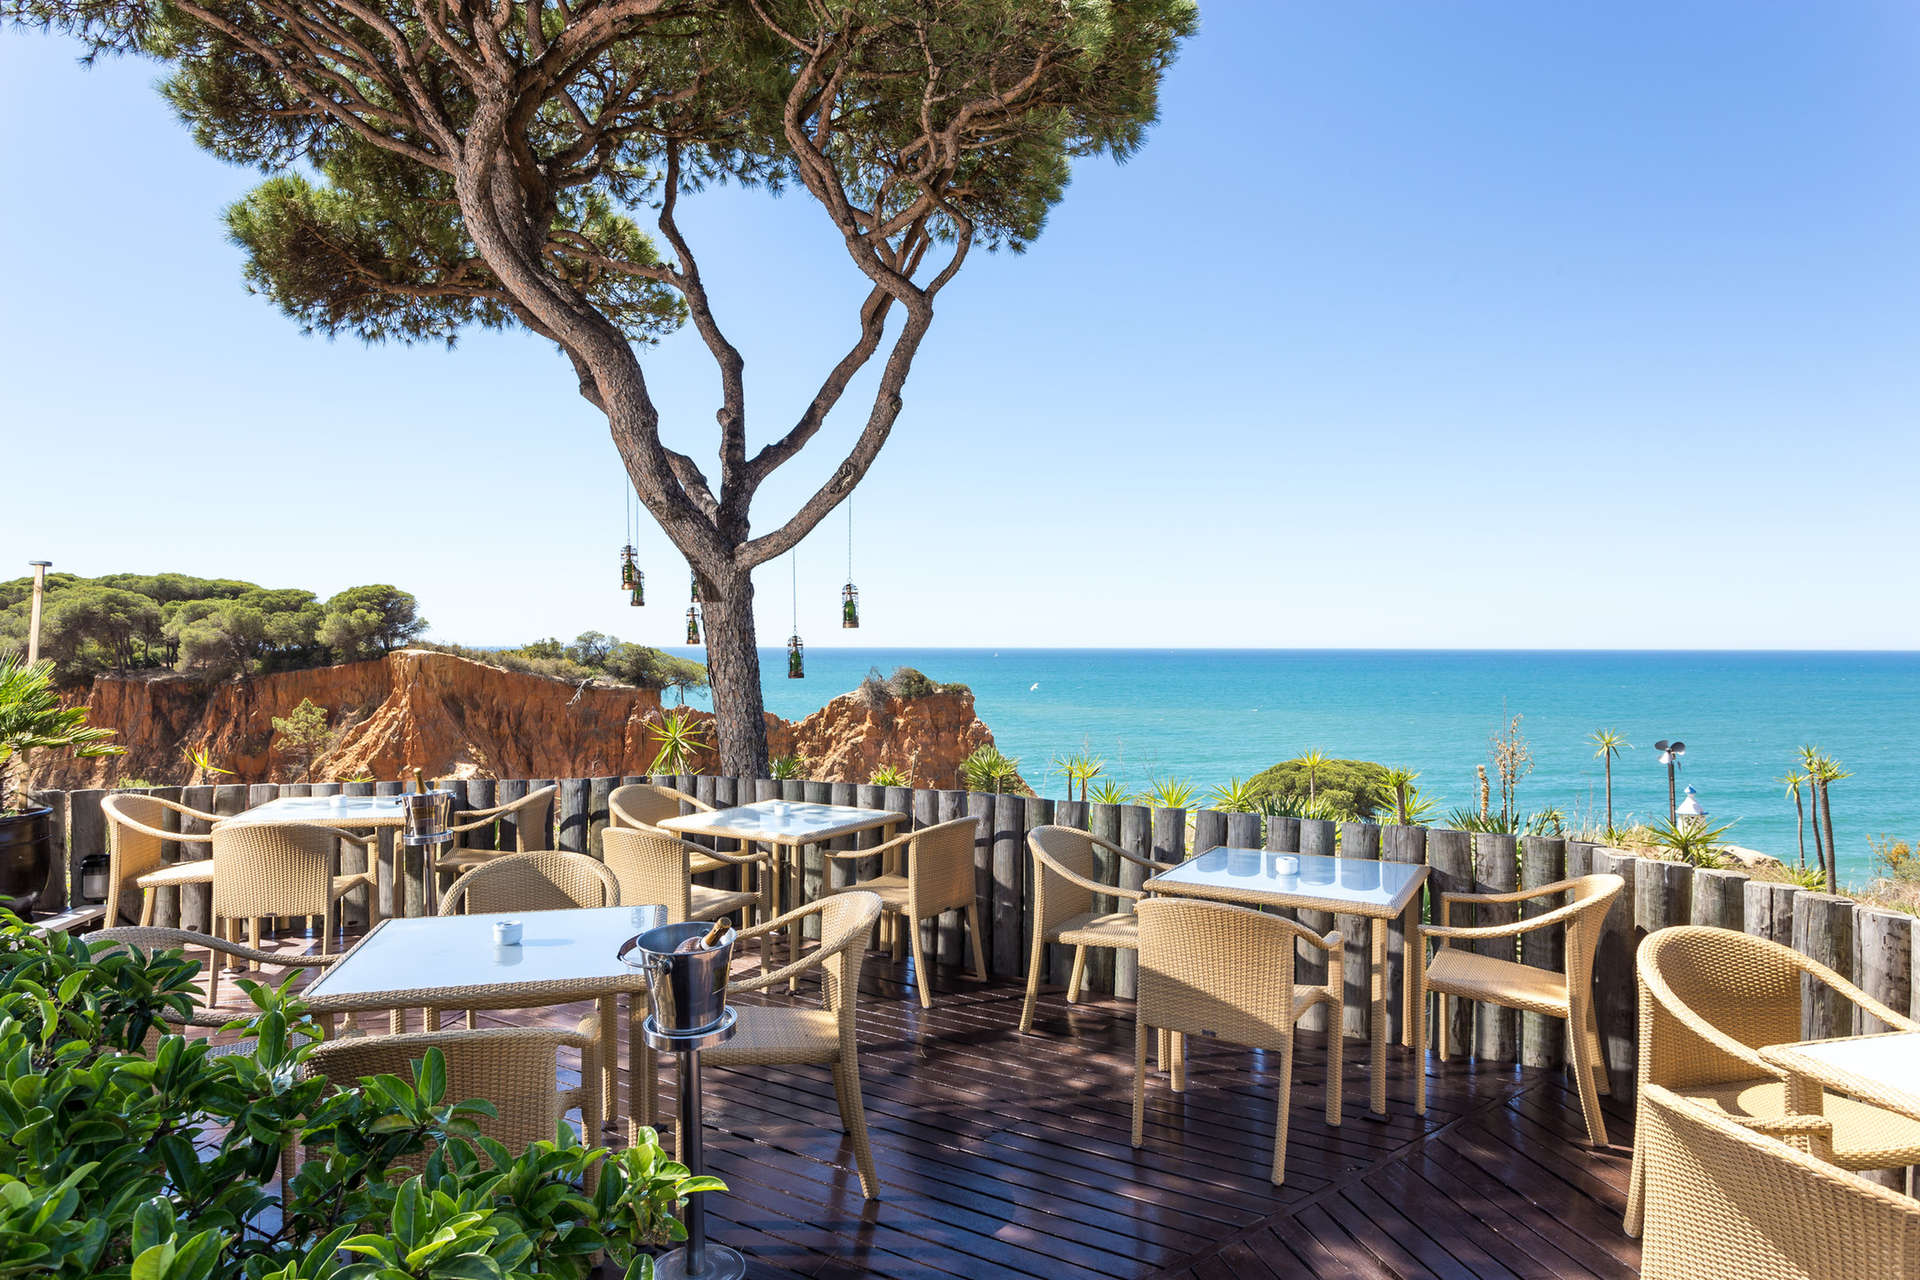 Praia da Falésia’nın rakipsiz güzellikteki manzaralarını izleyebileceğiniz Pine Cliffs Hotel, a Luxury Collection Resort, Algarve